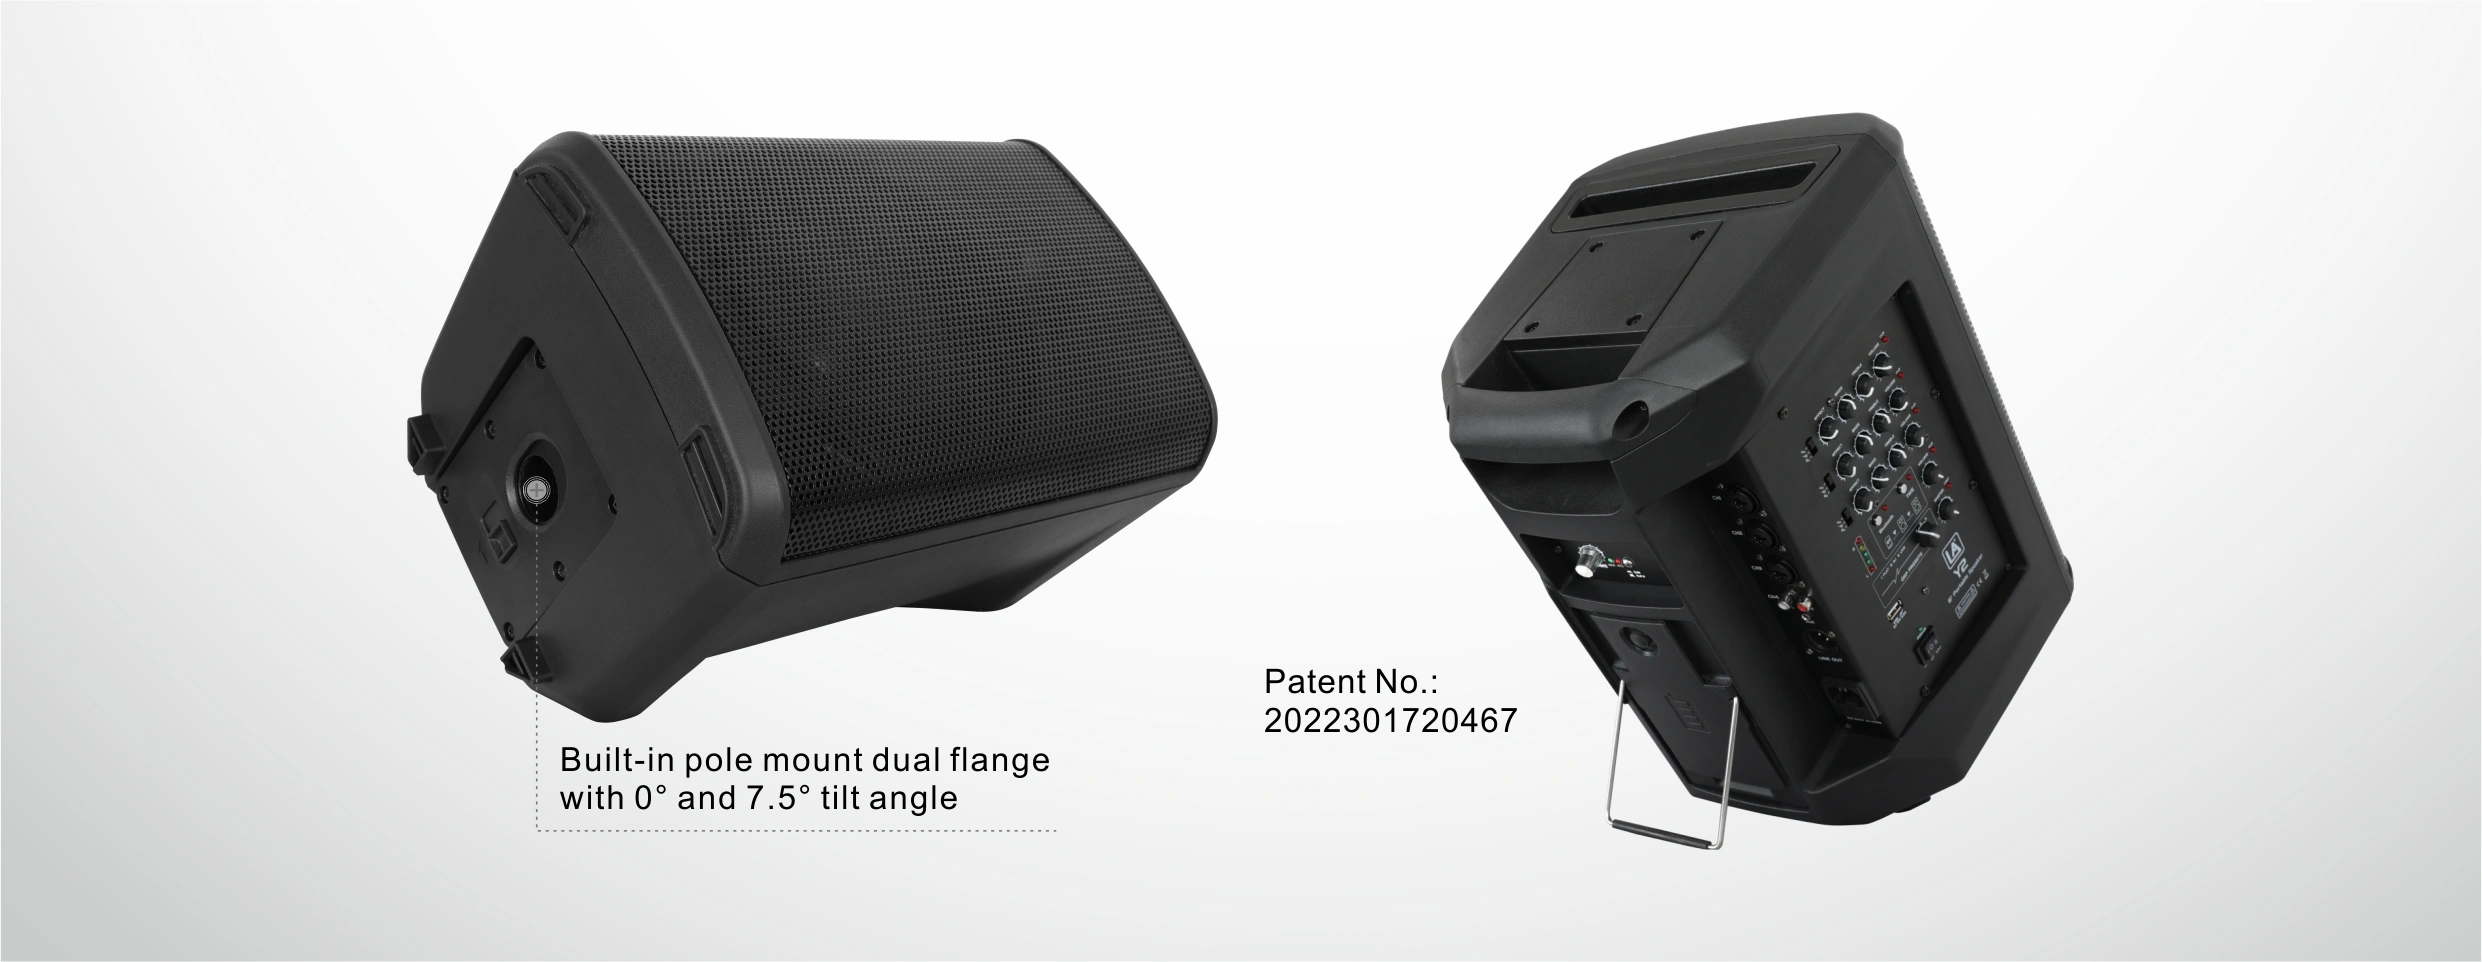 Portable speakers,compact speaker,all in one speaker,Multi function speakers,Bluetooth speaker